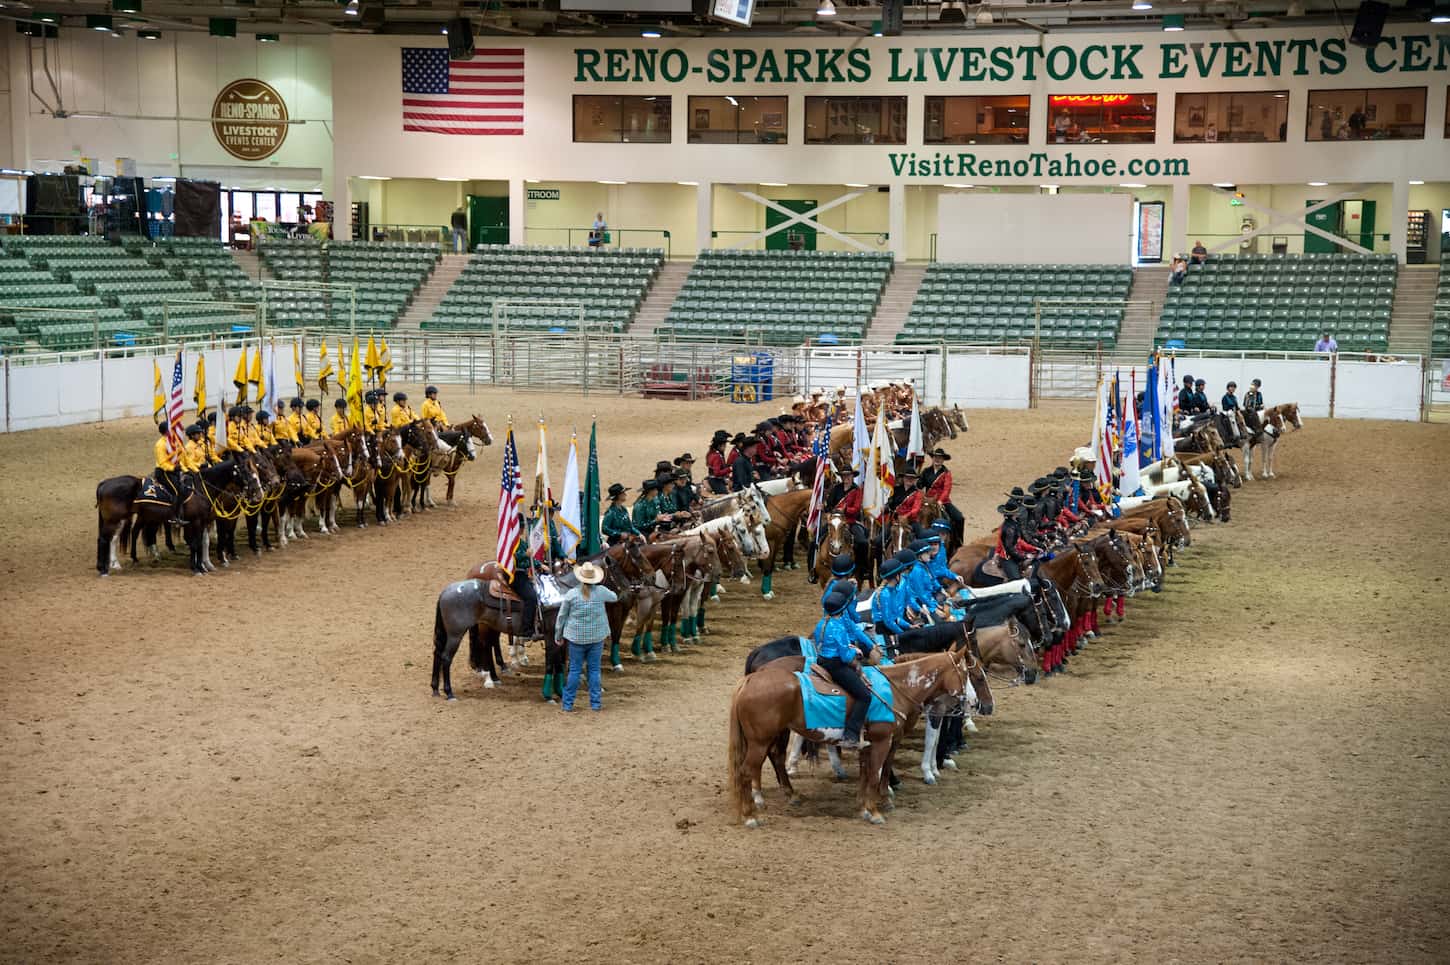 Reno-Sparks Livestock Events Center